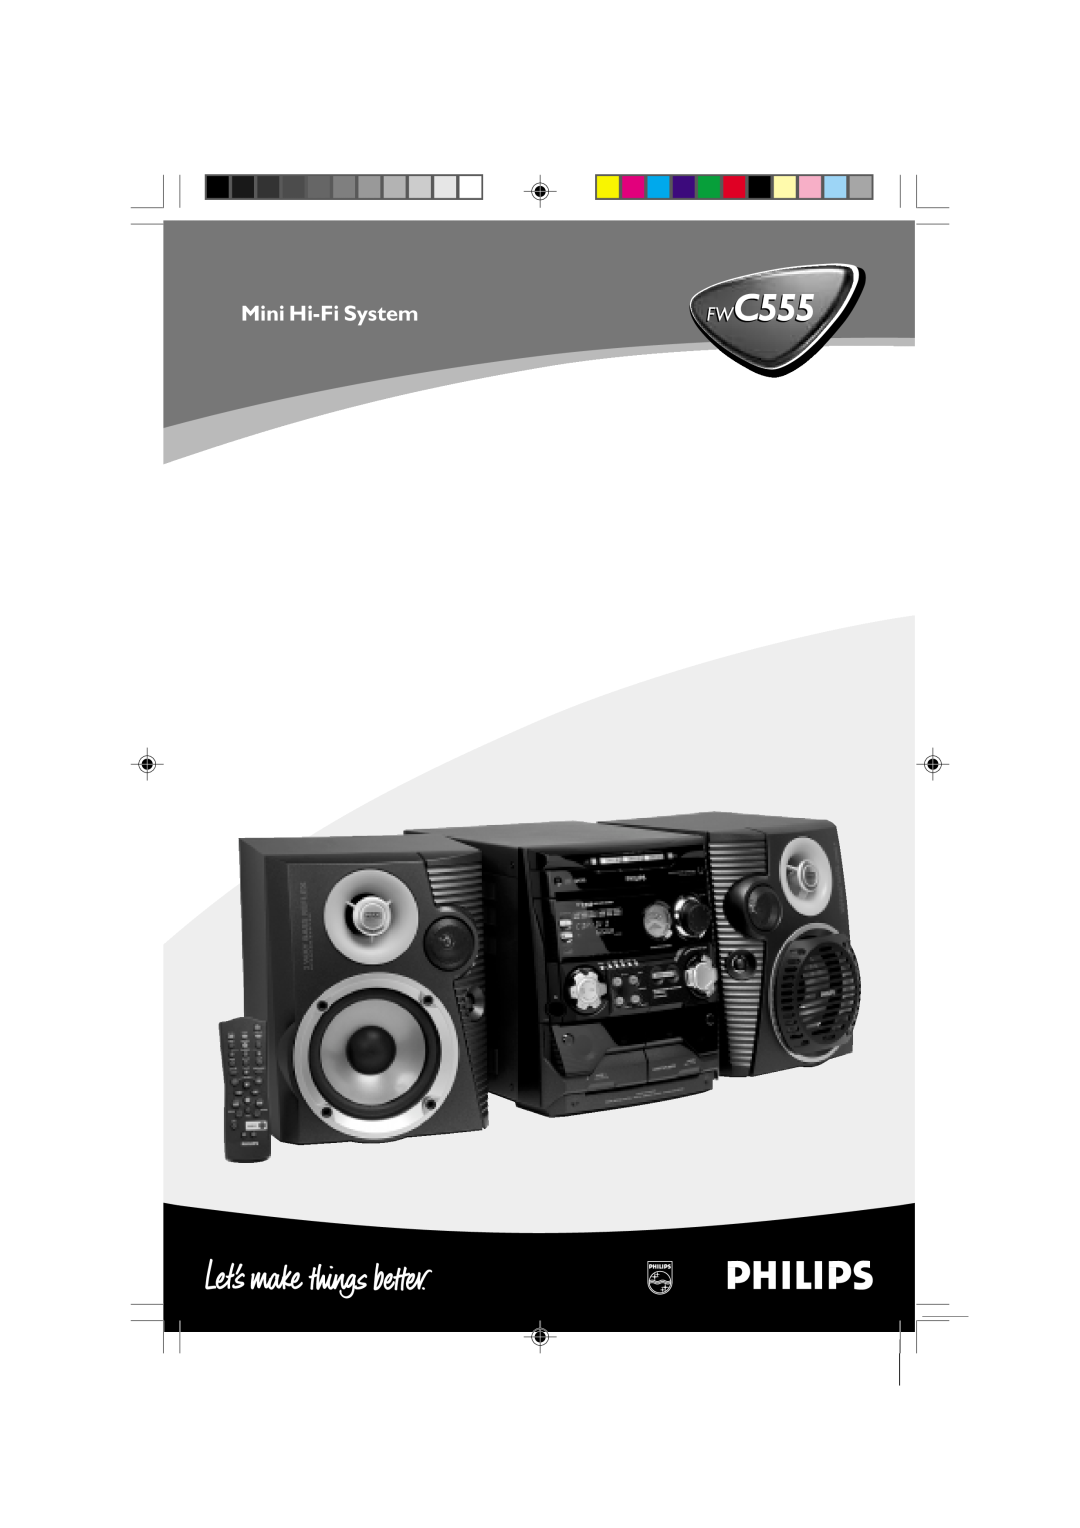 Philips manual Mini Hi-FiSystem, pg 001-028/C555/21-Eng, 12/11/01, 5 21 PM 